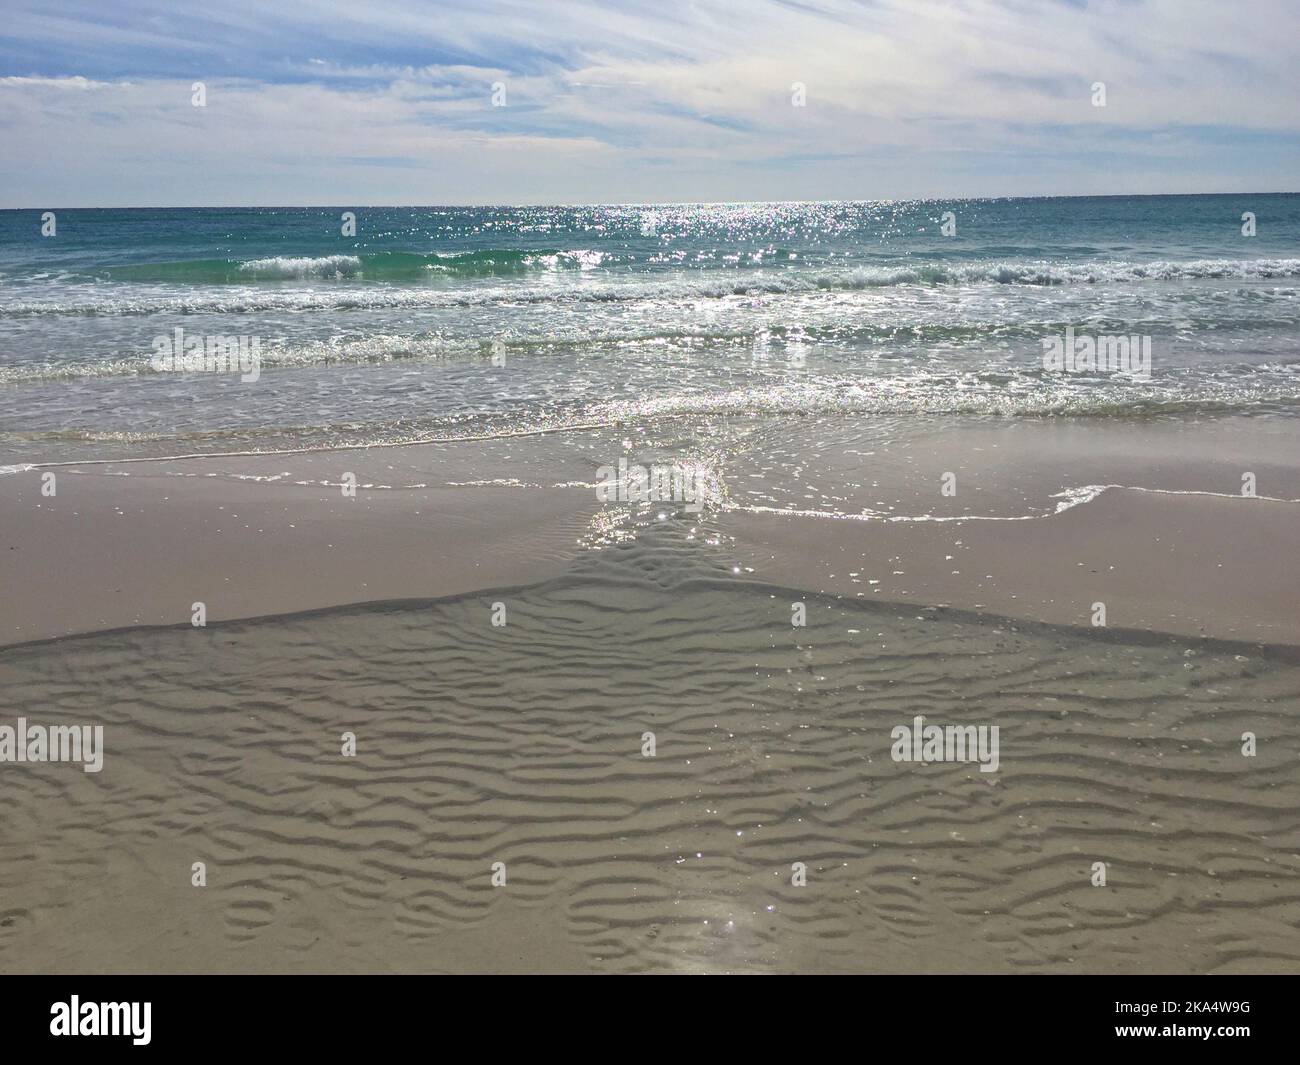 Sand bar in ocean, Pensacola beach, Santa Rosa, Florida, USA Stock Photo